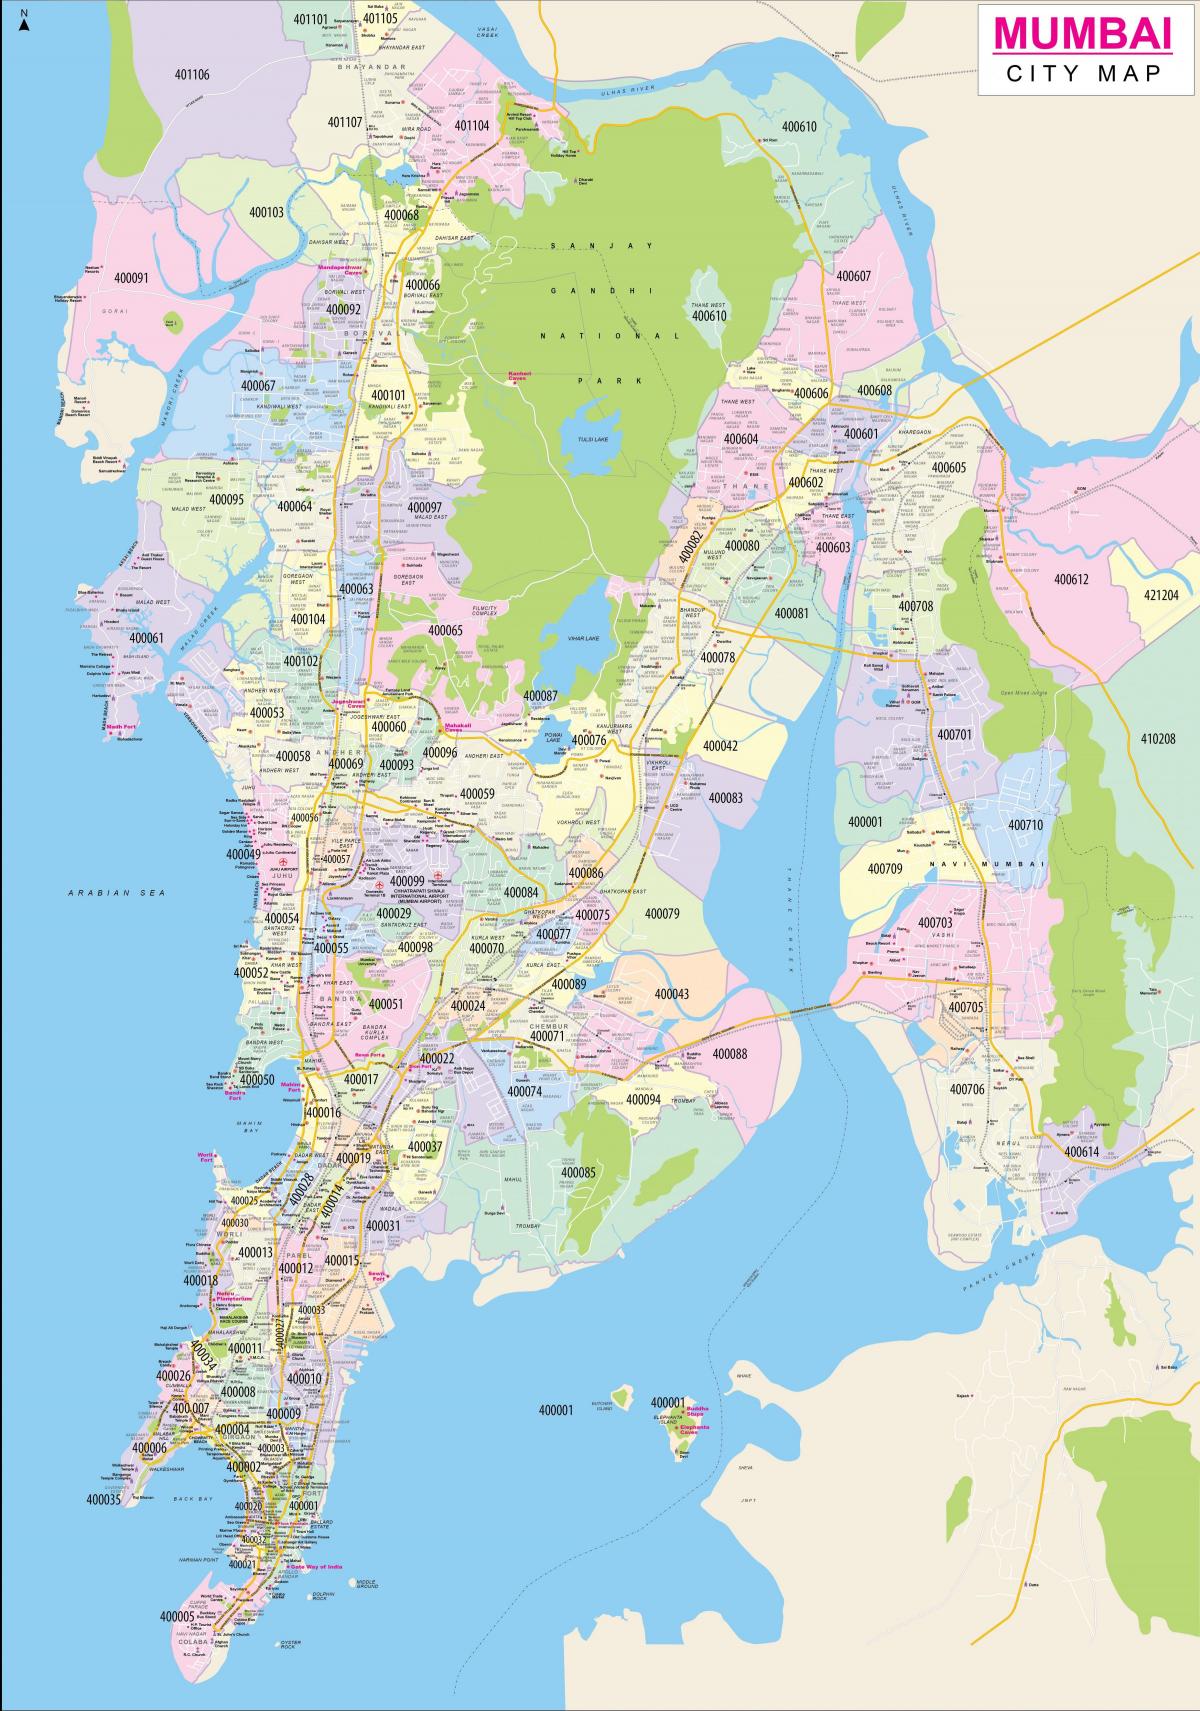 ムンバイ - ボンベイの都市地図